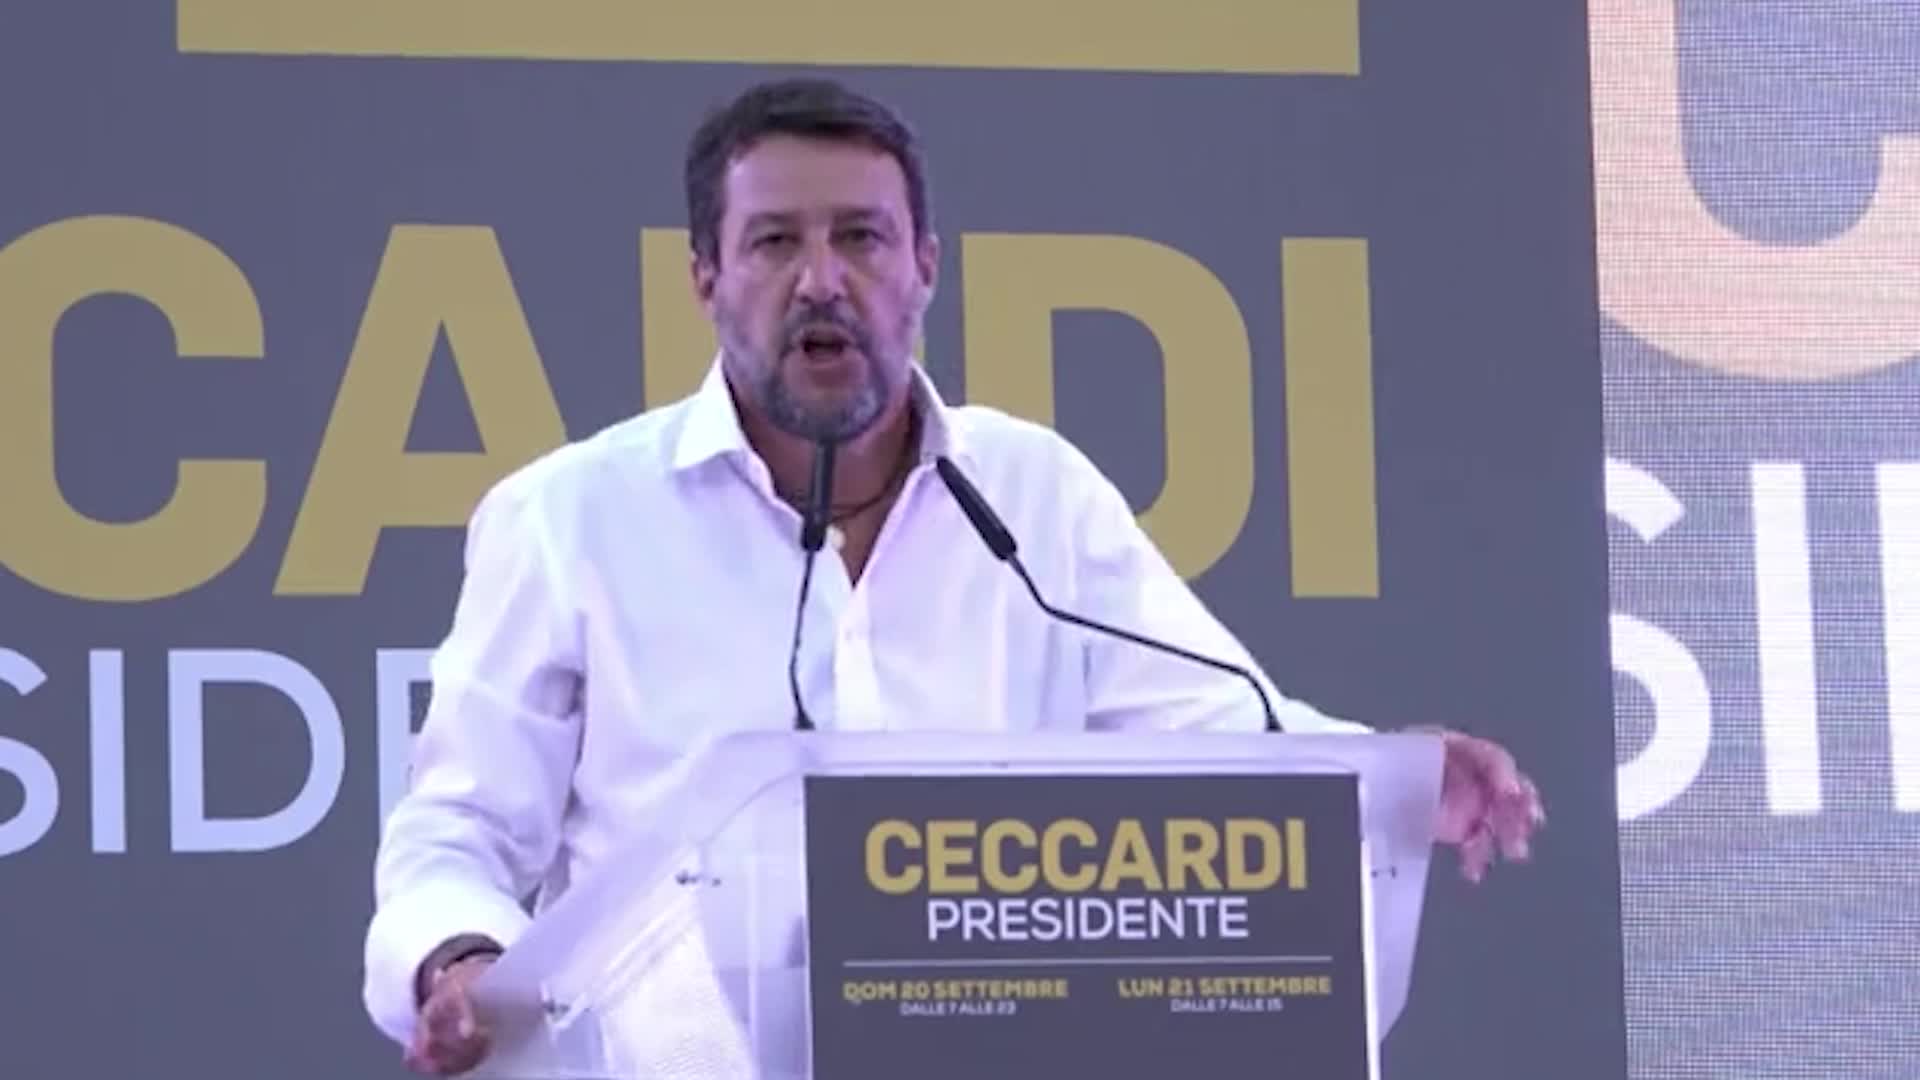 Regionali, le reazioni politiche: da Zingaretti a Salvini